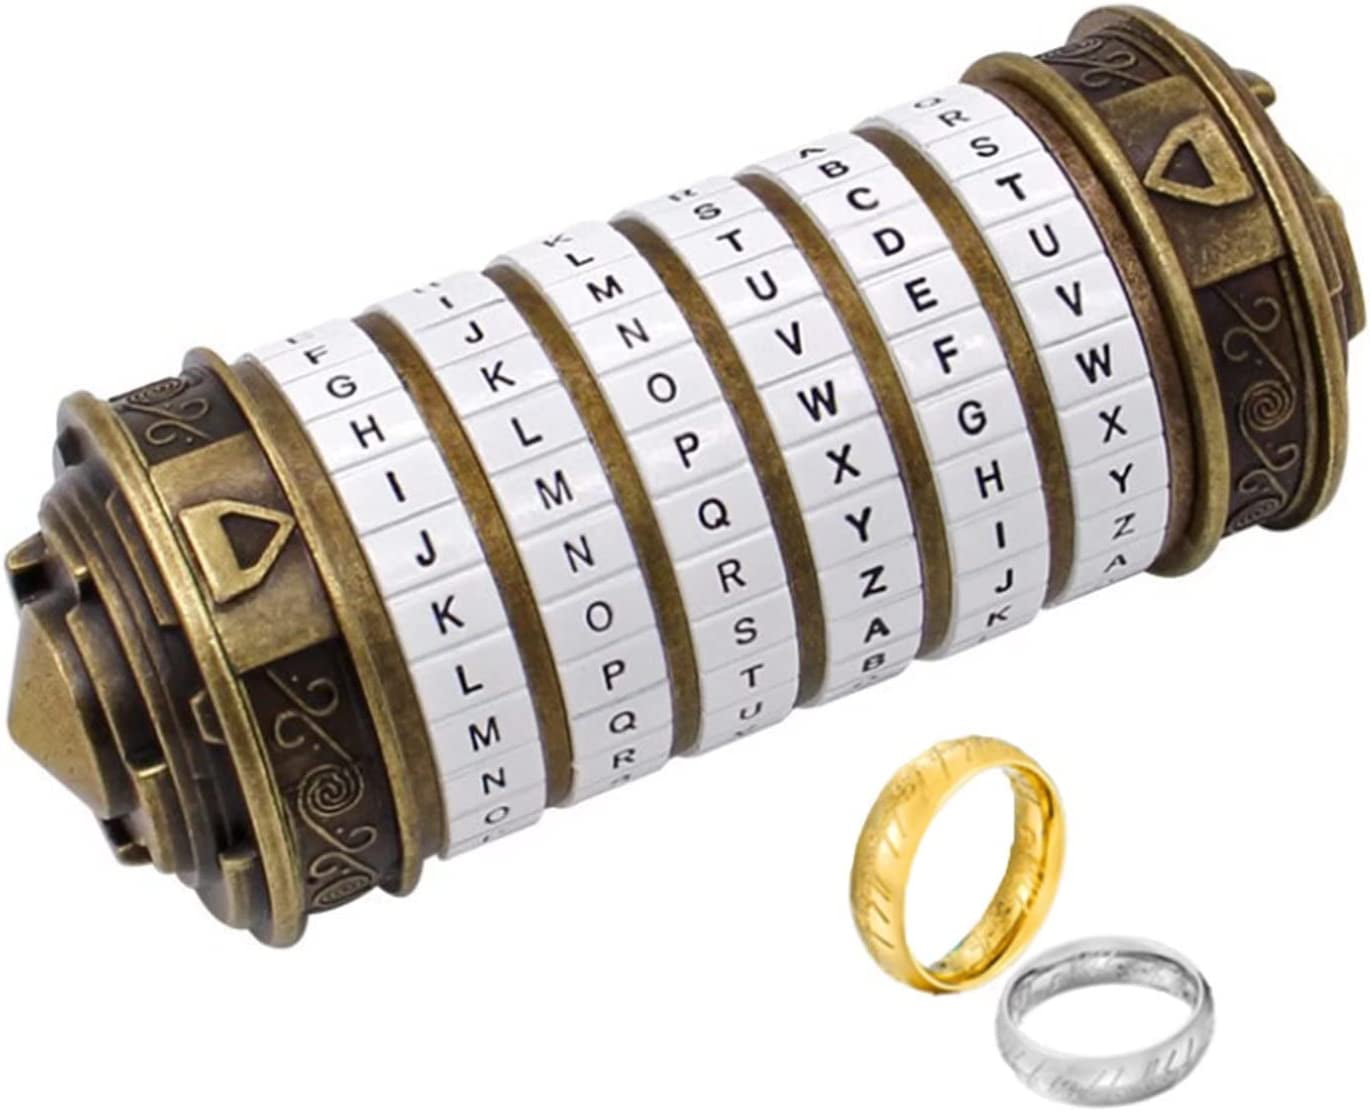 Romantic Birthday Gift Idea: 1pc Cryptex Da Vinci Code Mini Lock with  Hidden Compartment - Perfect for Valentine's Day or Anniversaries!